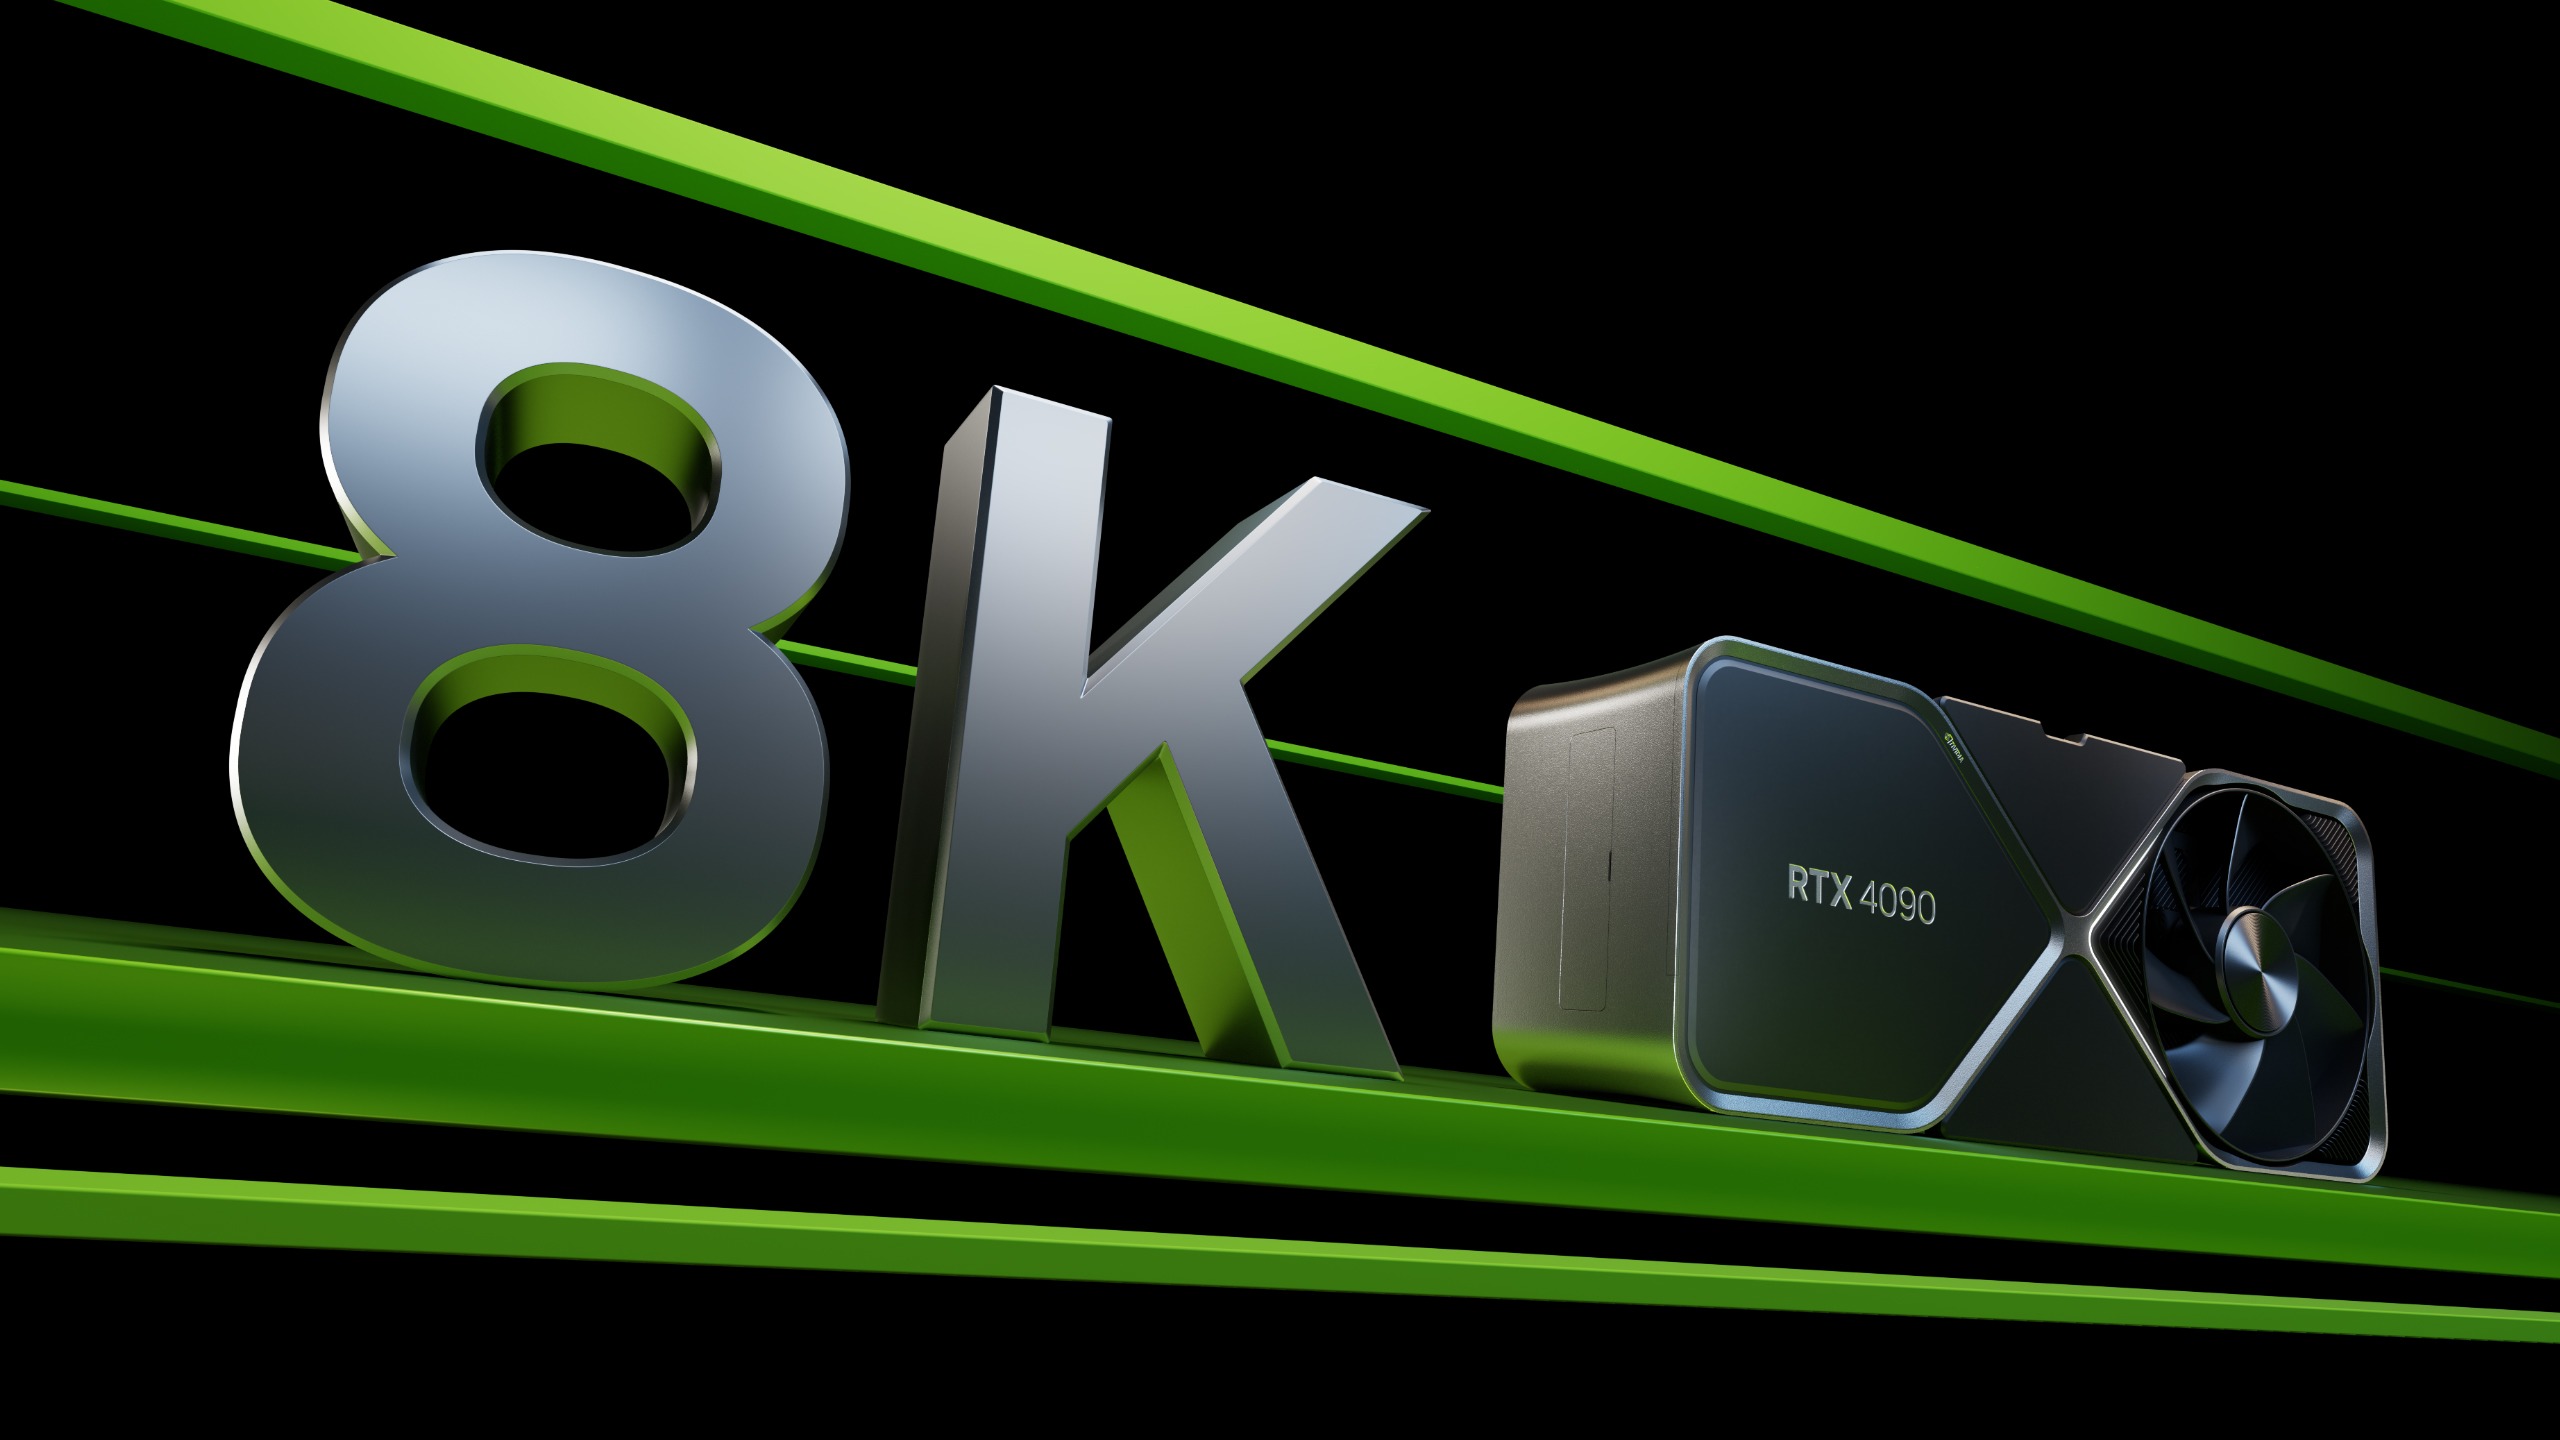 Immagine pubblicata in relazione al seguente contenuto: NVIDIA potrebbe lanciare la GeForce RTX 4090D entro la fine dell'anno corrente | Nome immagine: news35136_NVIDIA-GeForce-RTX-4090_9.jpg